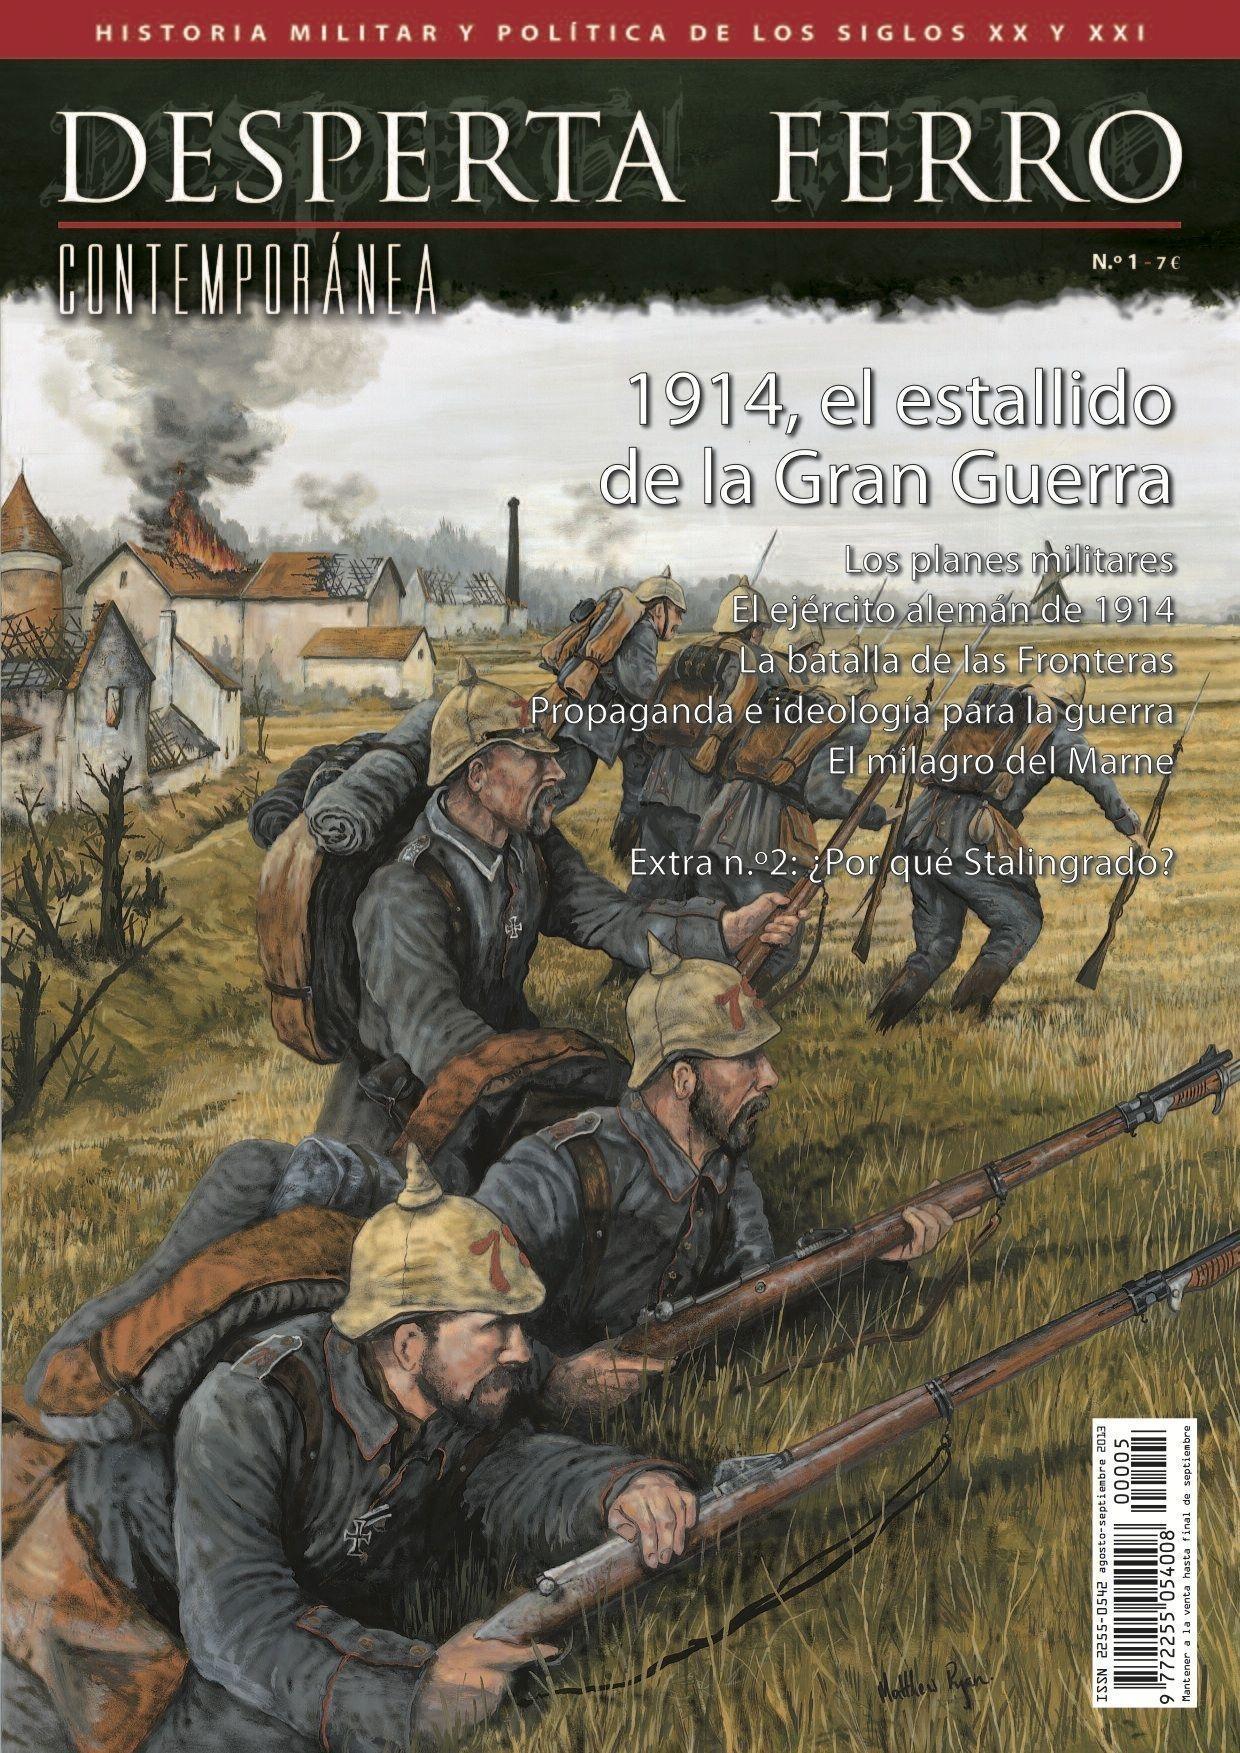 Desperta Ferro. Contemporánea nº 1: 1914, el estallido de la Gran Guerra. 